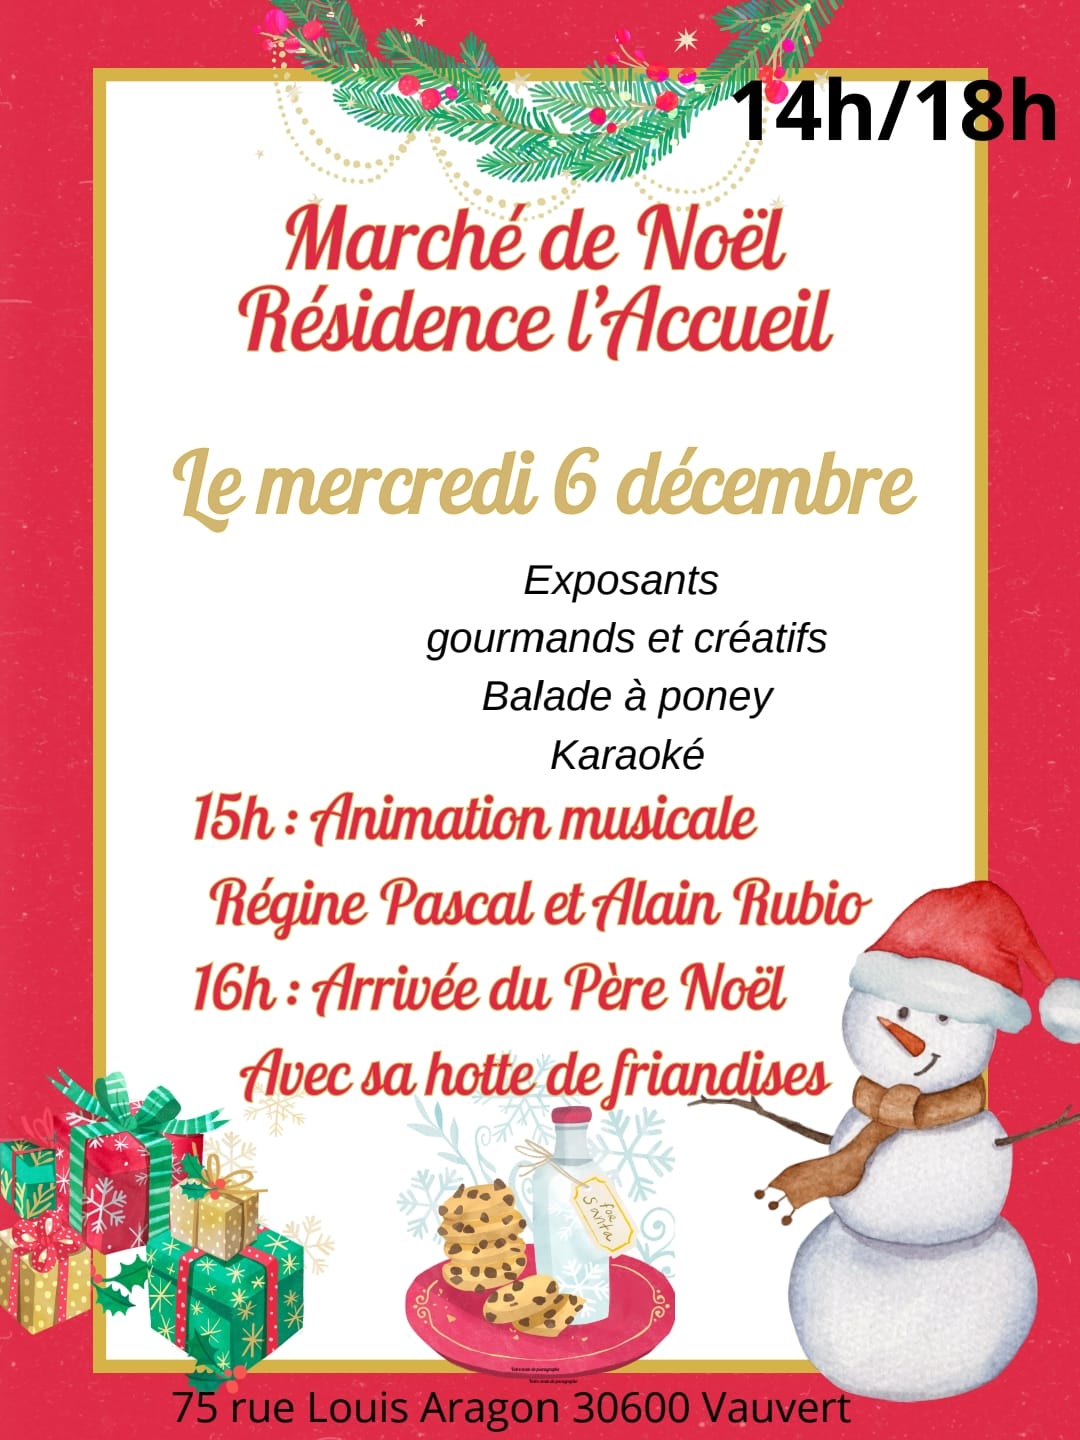 Marché de Noel Vauvert - L'Accueil Mercredi 06 décembre